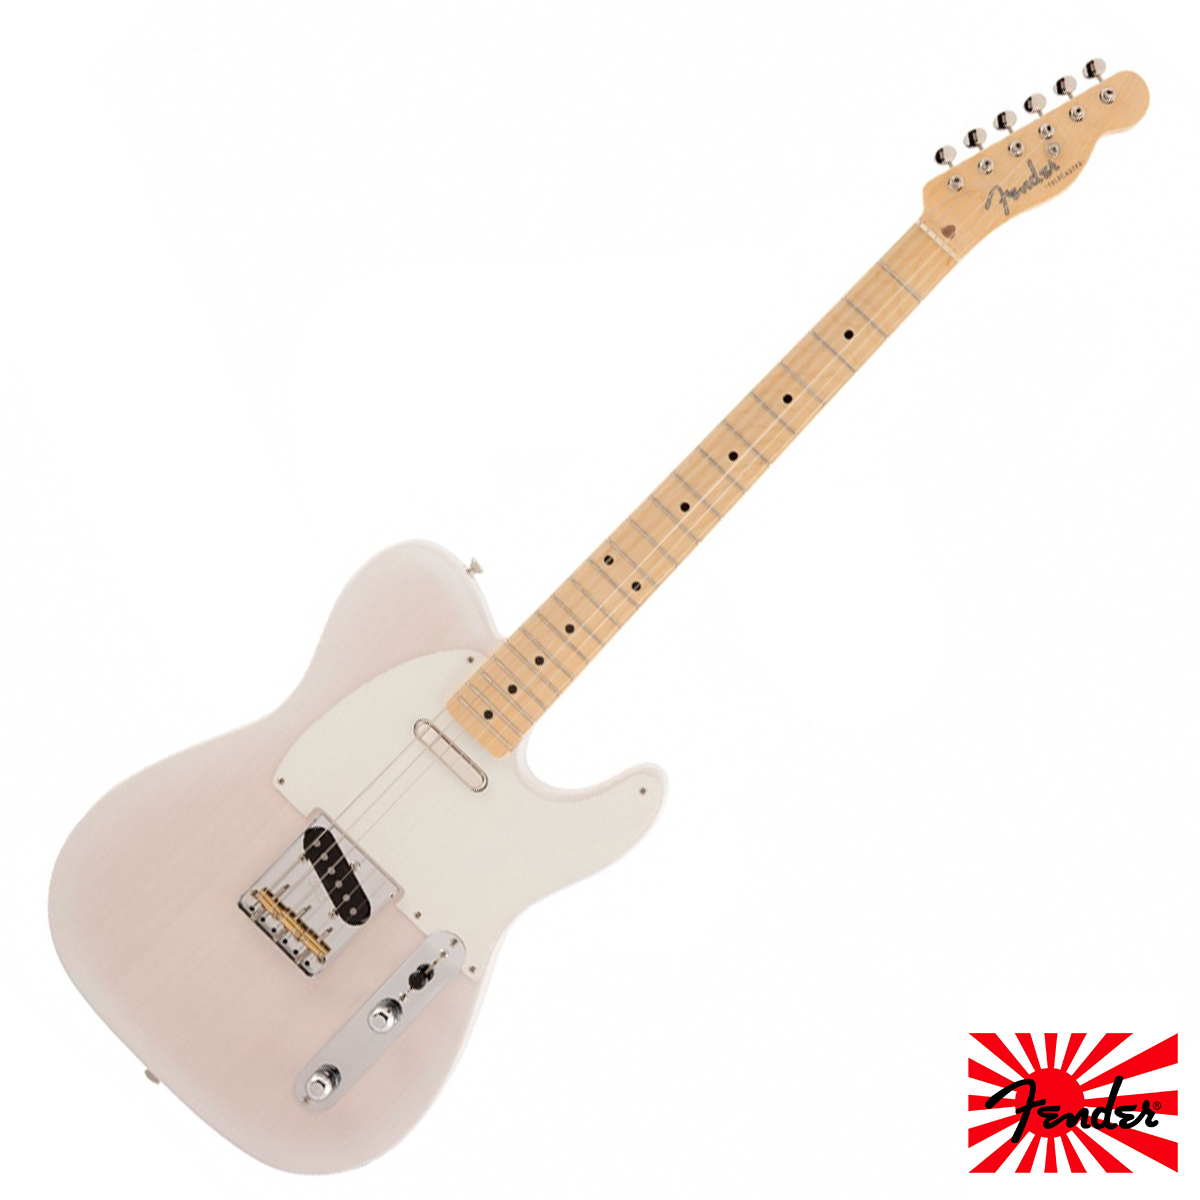 無息分期Fender Japan Traditional II 50s Tele 2020 電吉他